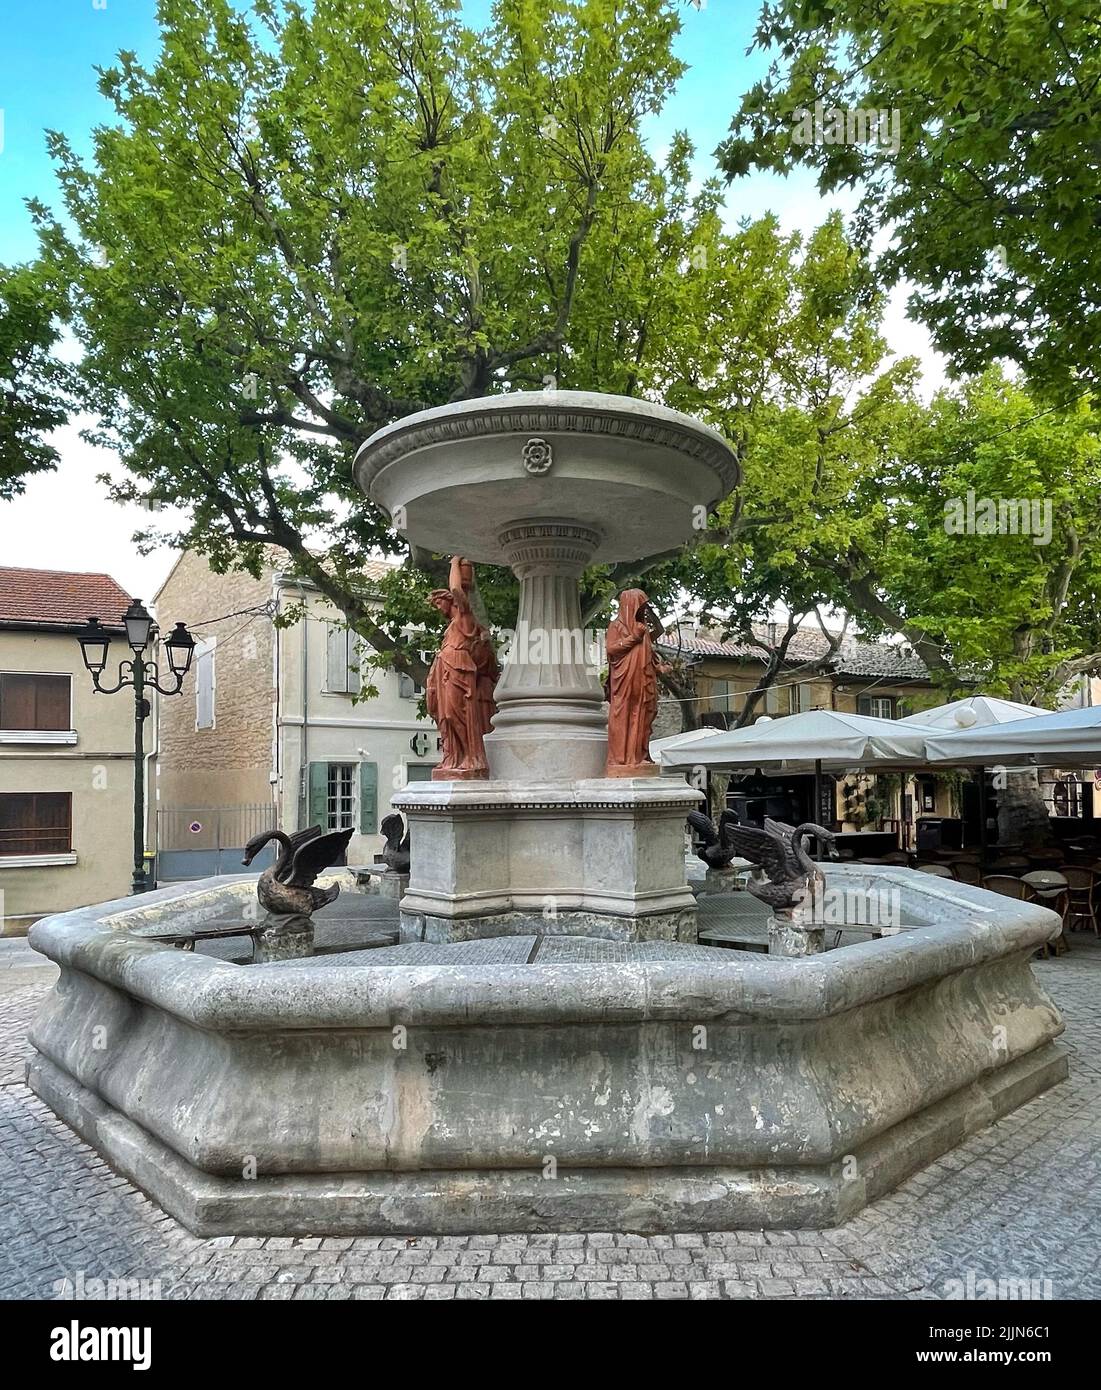 Fontaine des Quatre Saisons, Maussane-les-Alpilles, Bouches-du-Rhone, Provence-Alpes-Cote-d'Azur, France Stock Photo